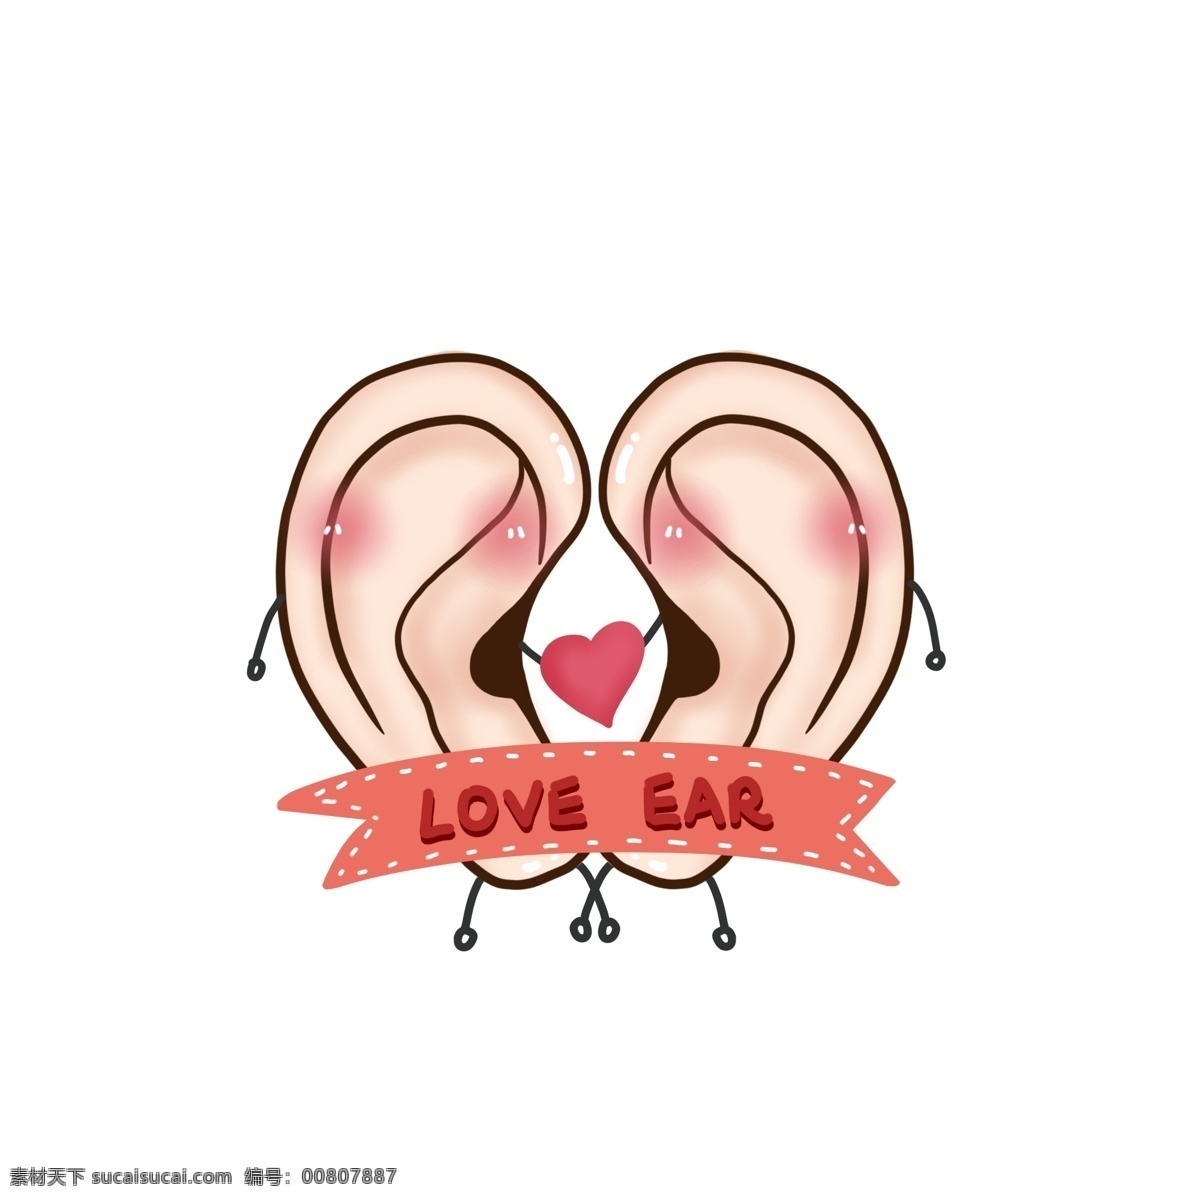 爱耳日 可爱 卡通 耳朵 元素 手绘耳朵 可爱耳朵 卡通耳朵 爱心